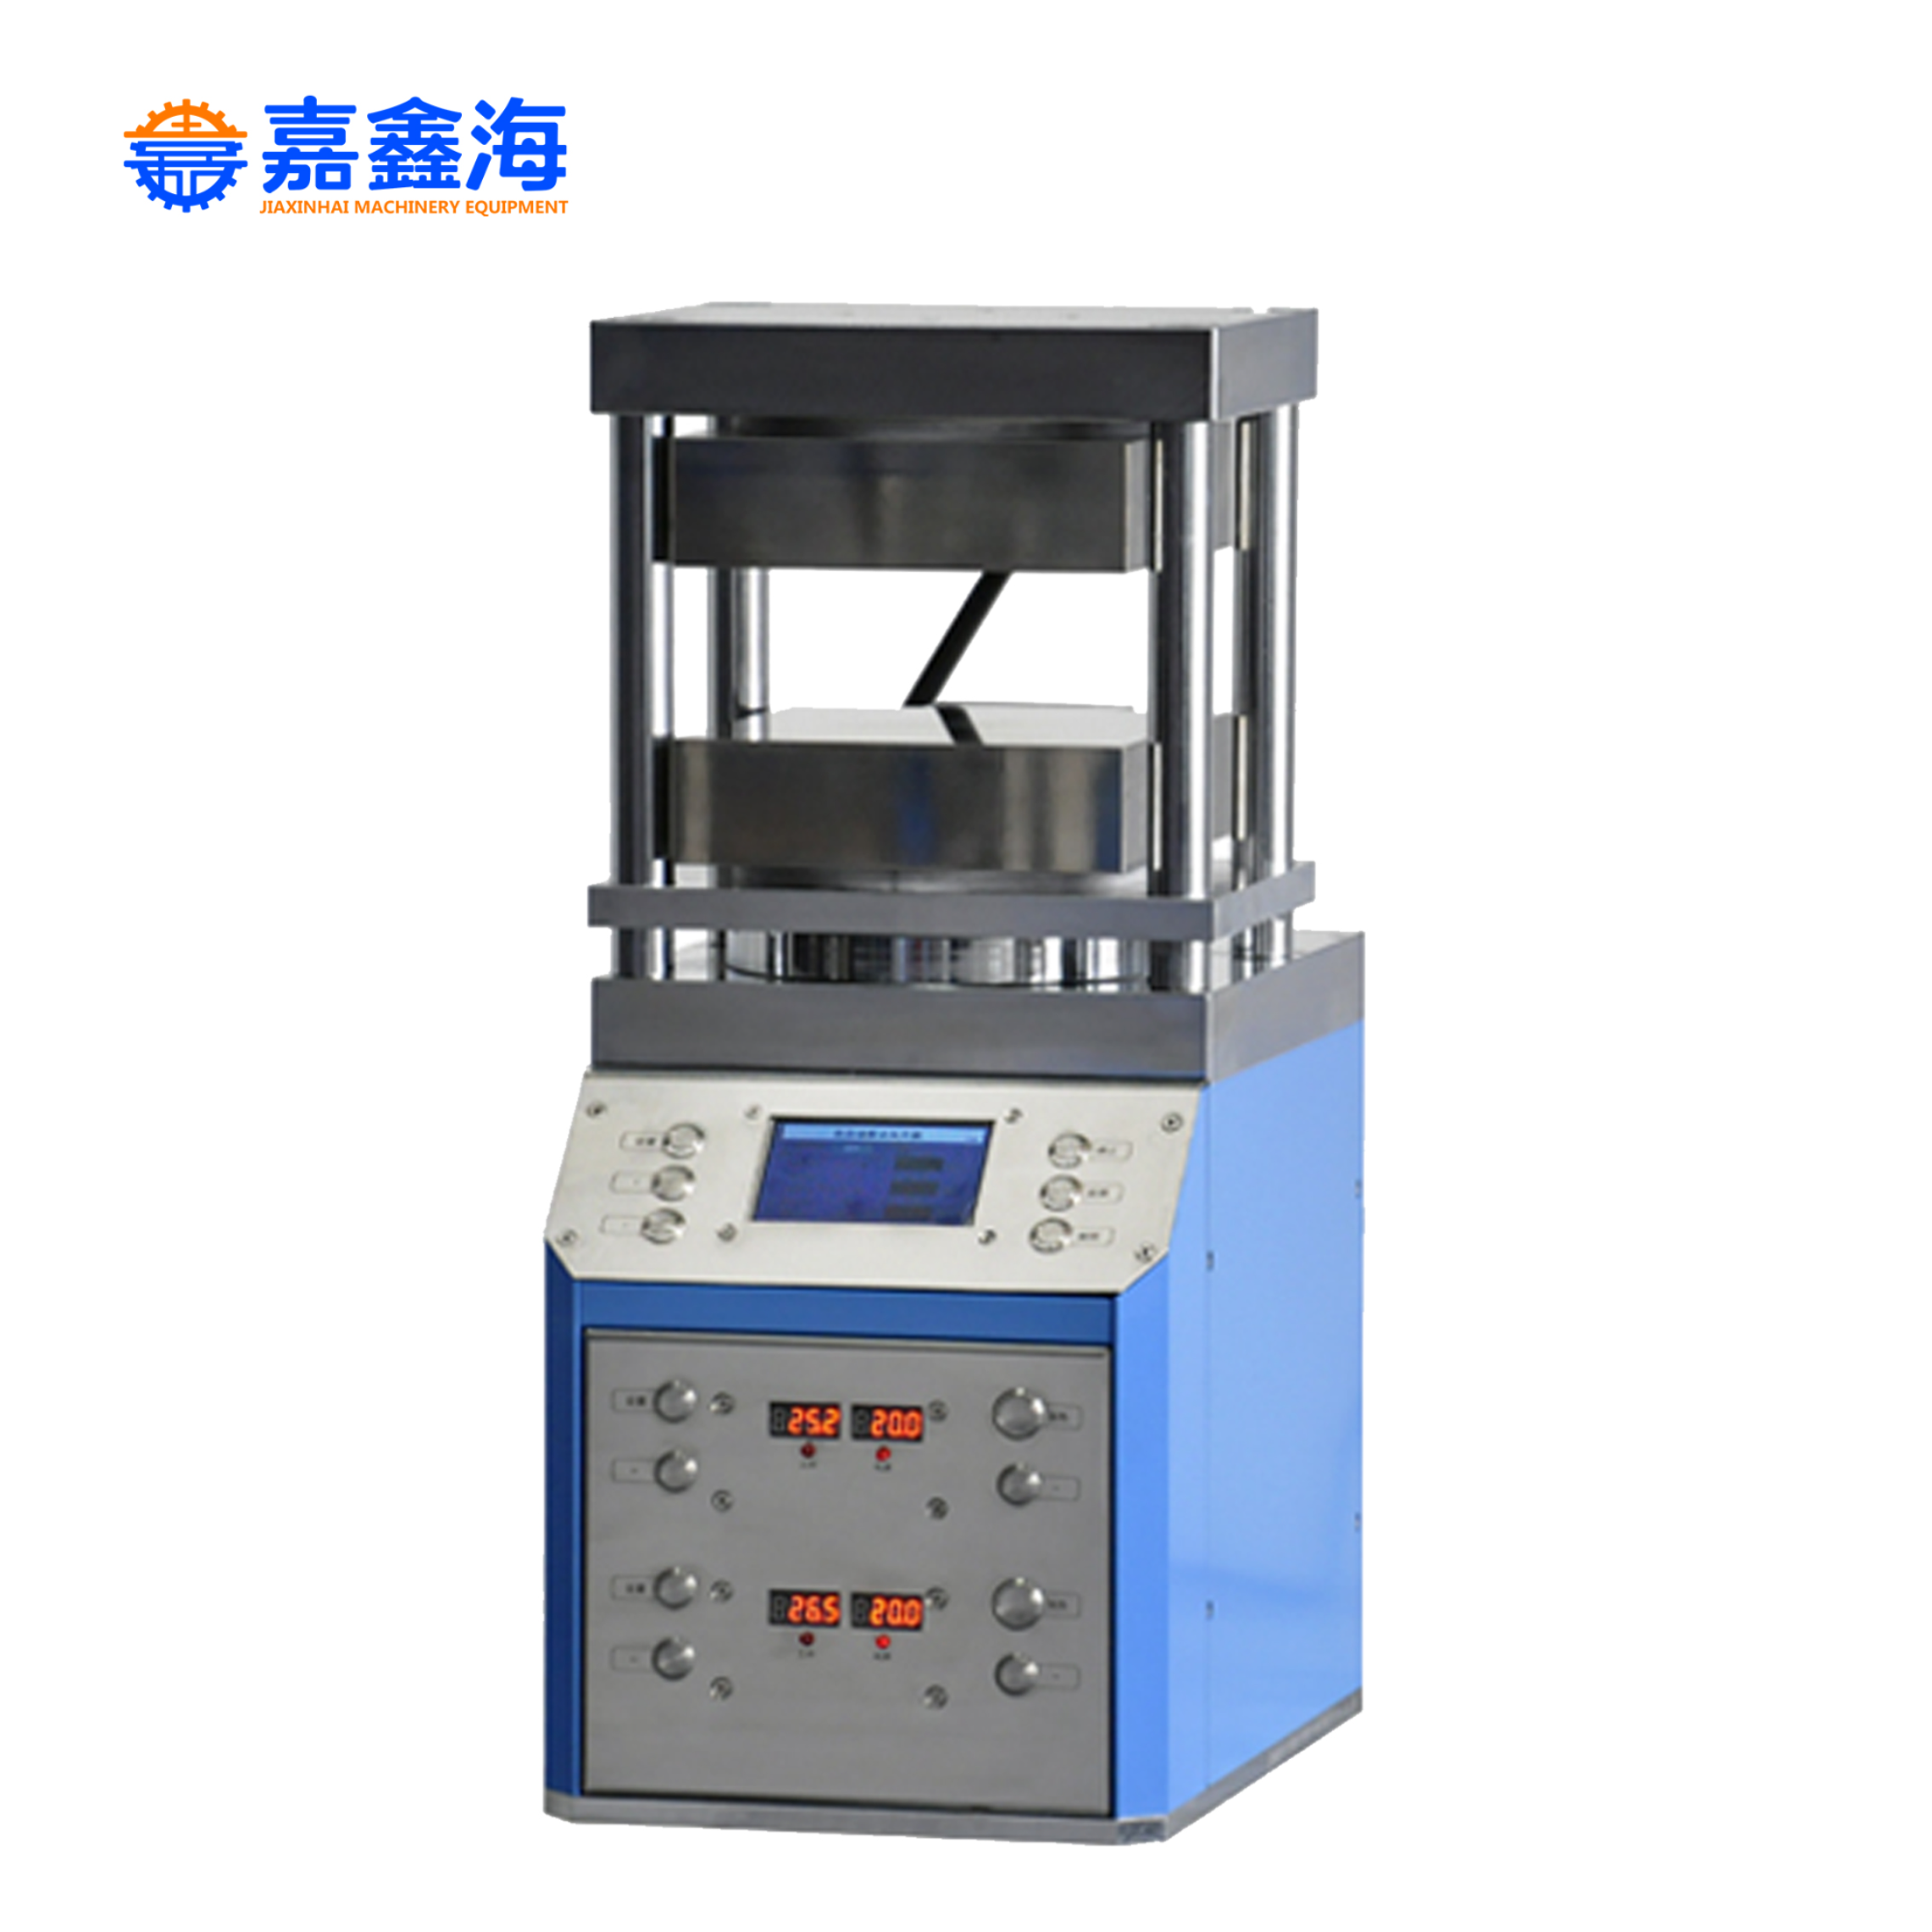 嘉鑫海 JPP-600D 300度双平板 自动热压机